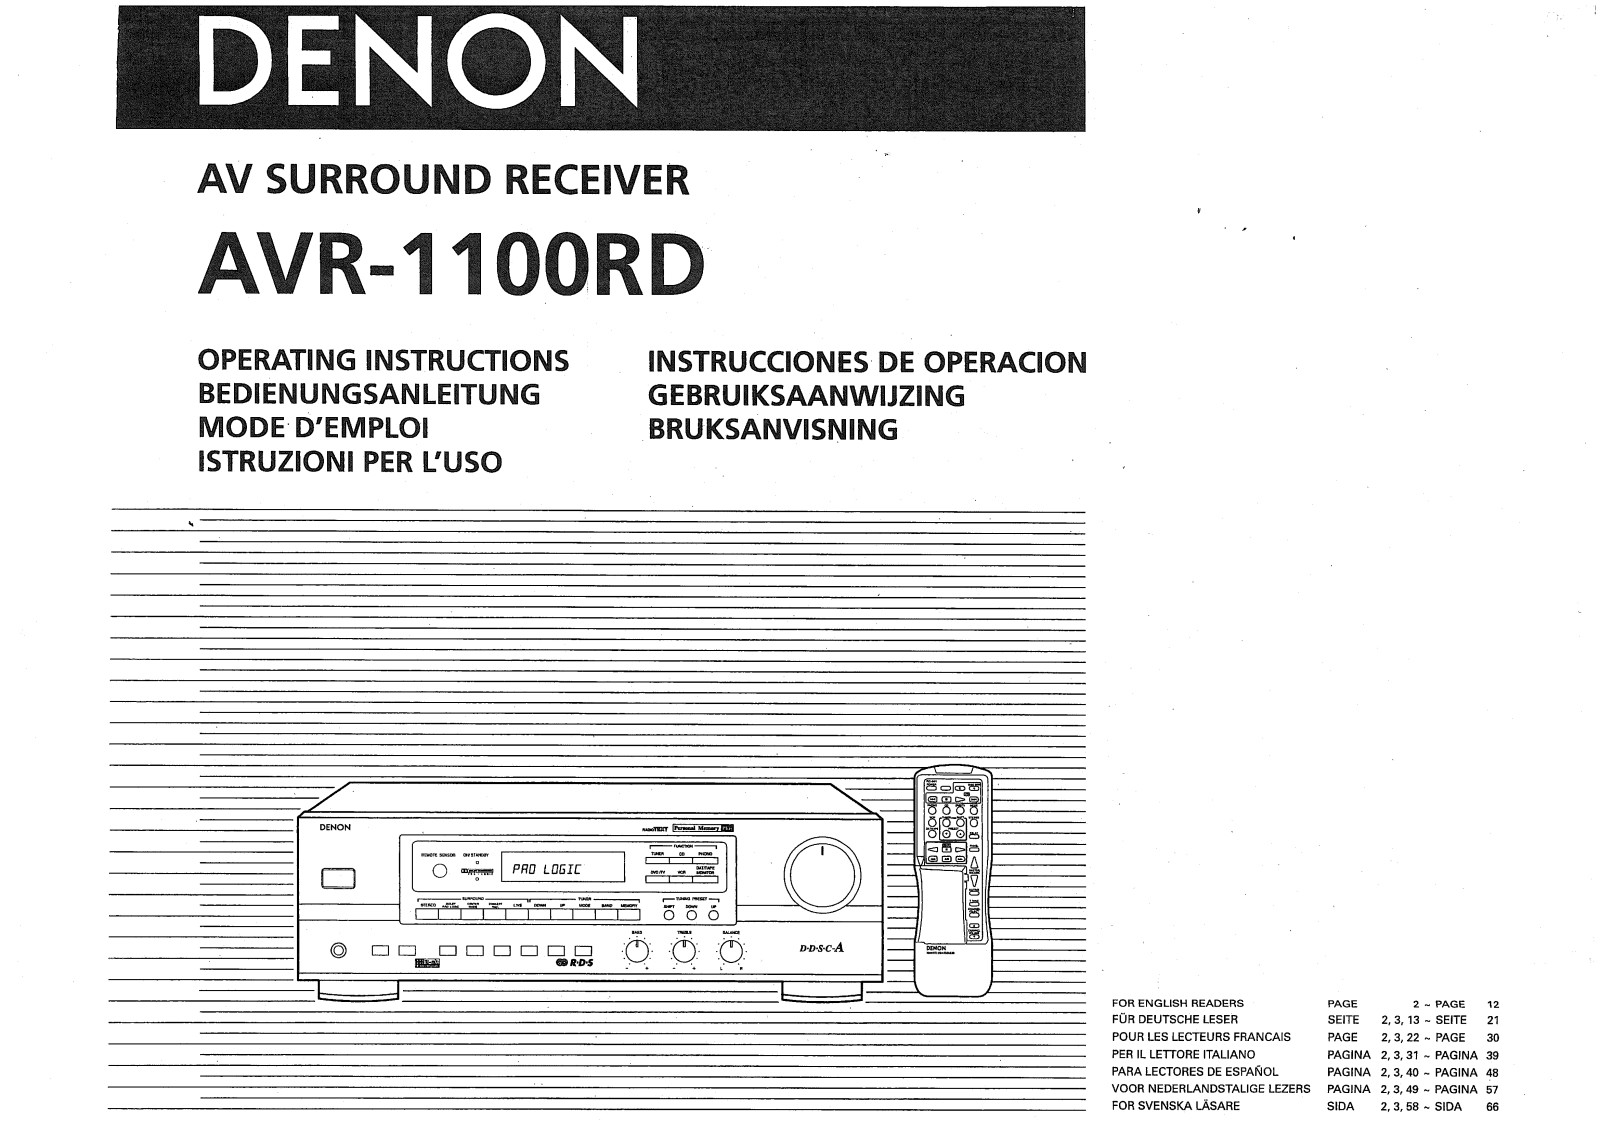 Denon AVR-1100RD Owner's Manual